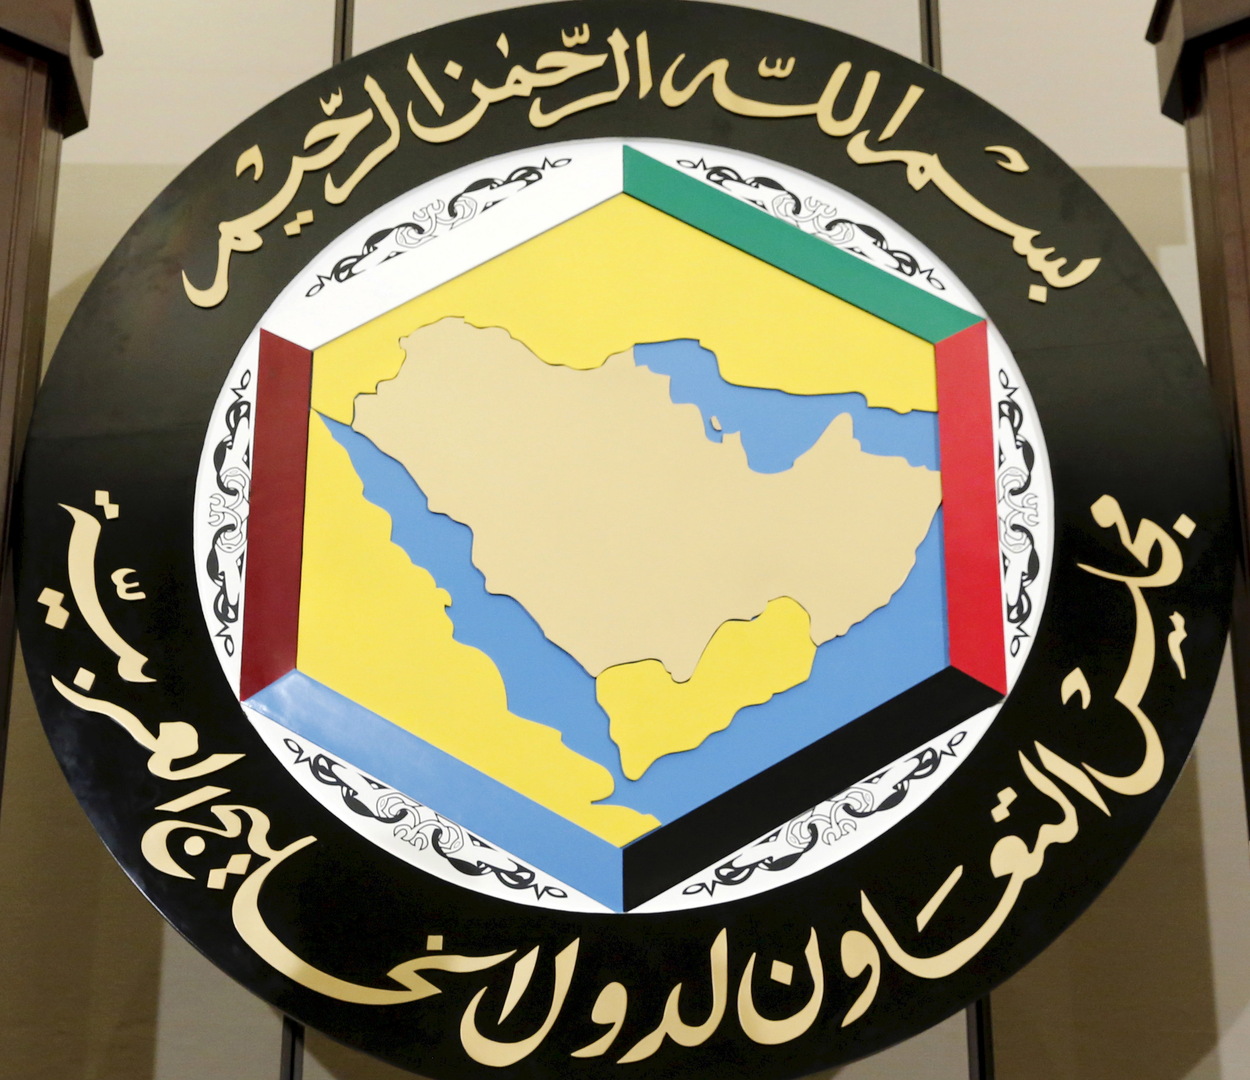 مجلس التعاون الخليجي: أمن مصر جزء لا يتجزأ من أمن الخليج ونثمن جهودها في تعزيز أمن المنطقة